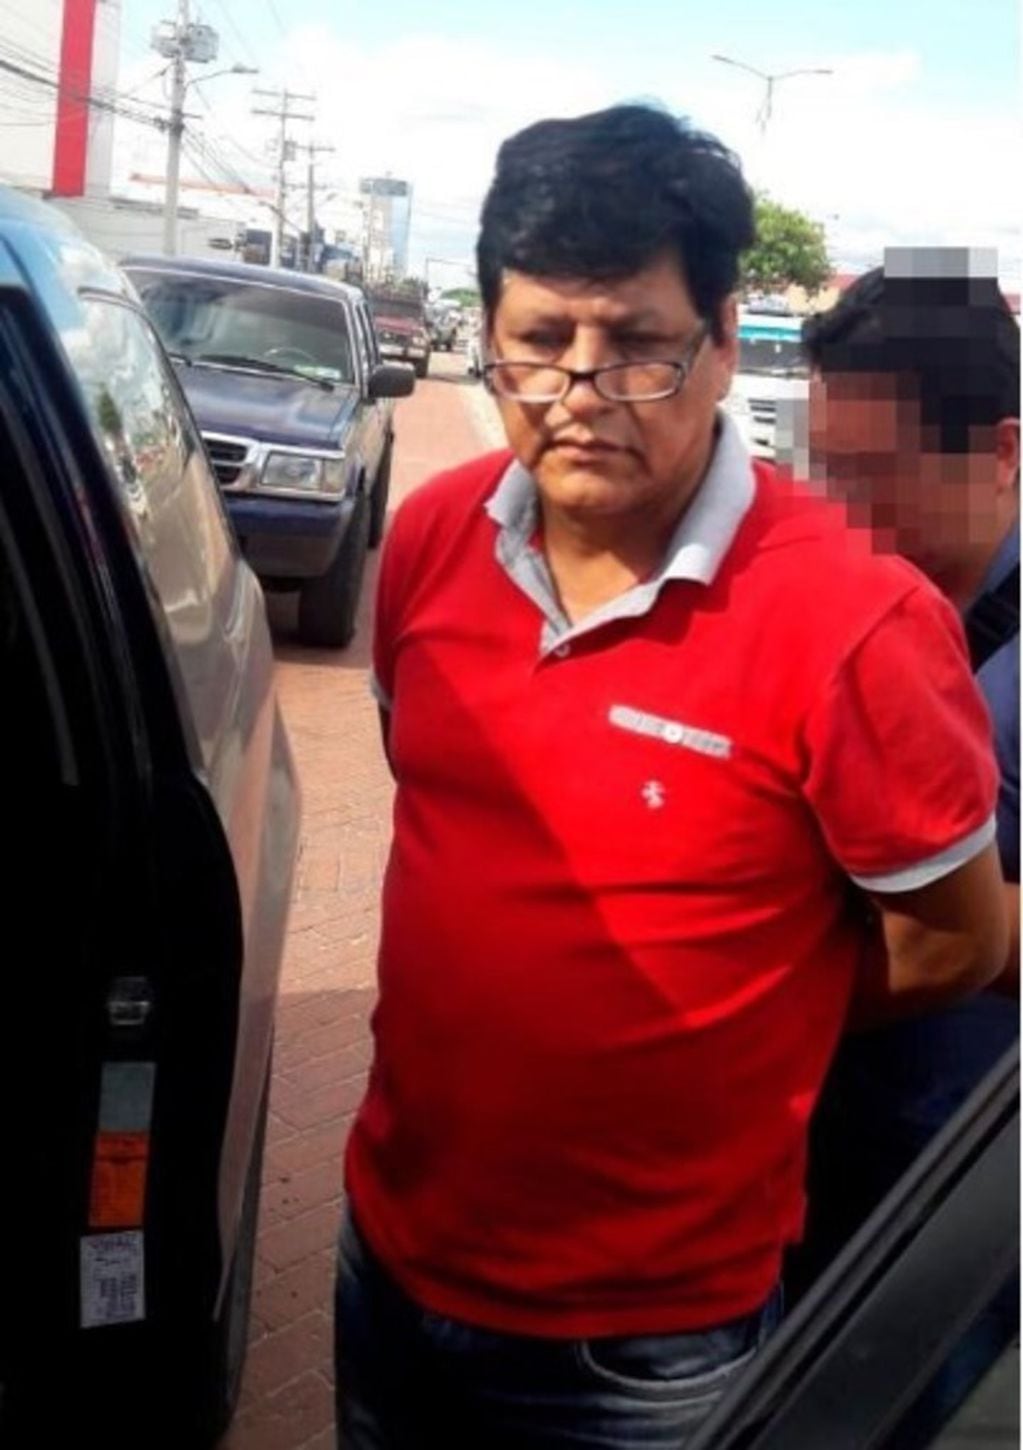 El traficante José Miguel Farfán, al momento de ser detenido por la Policía boliviana, el miércoles.